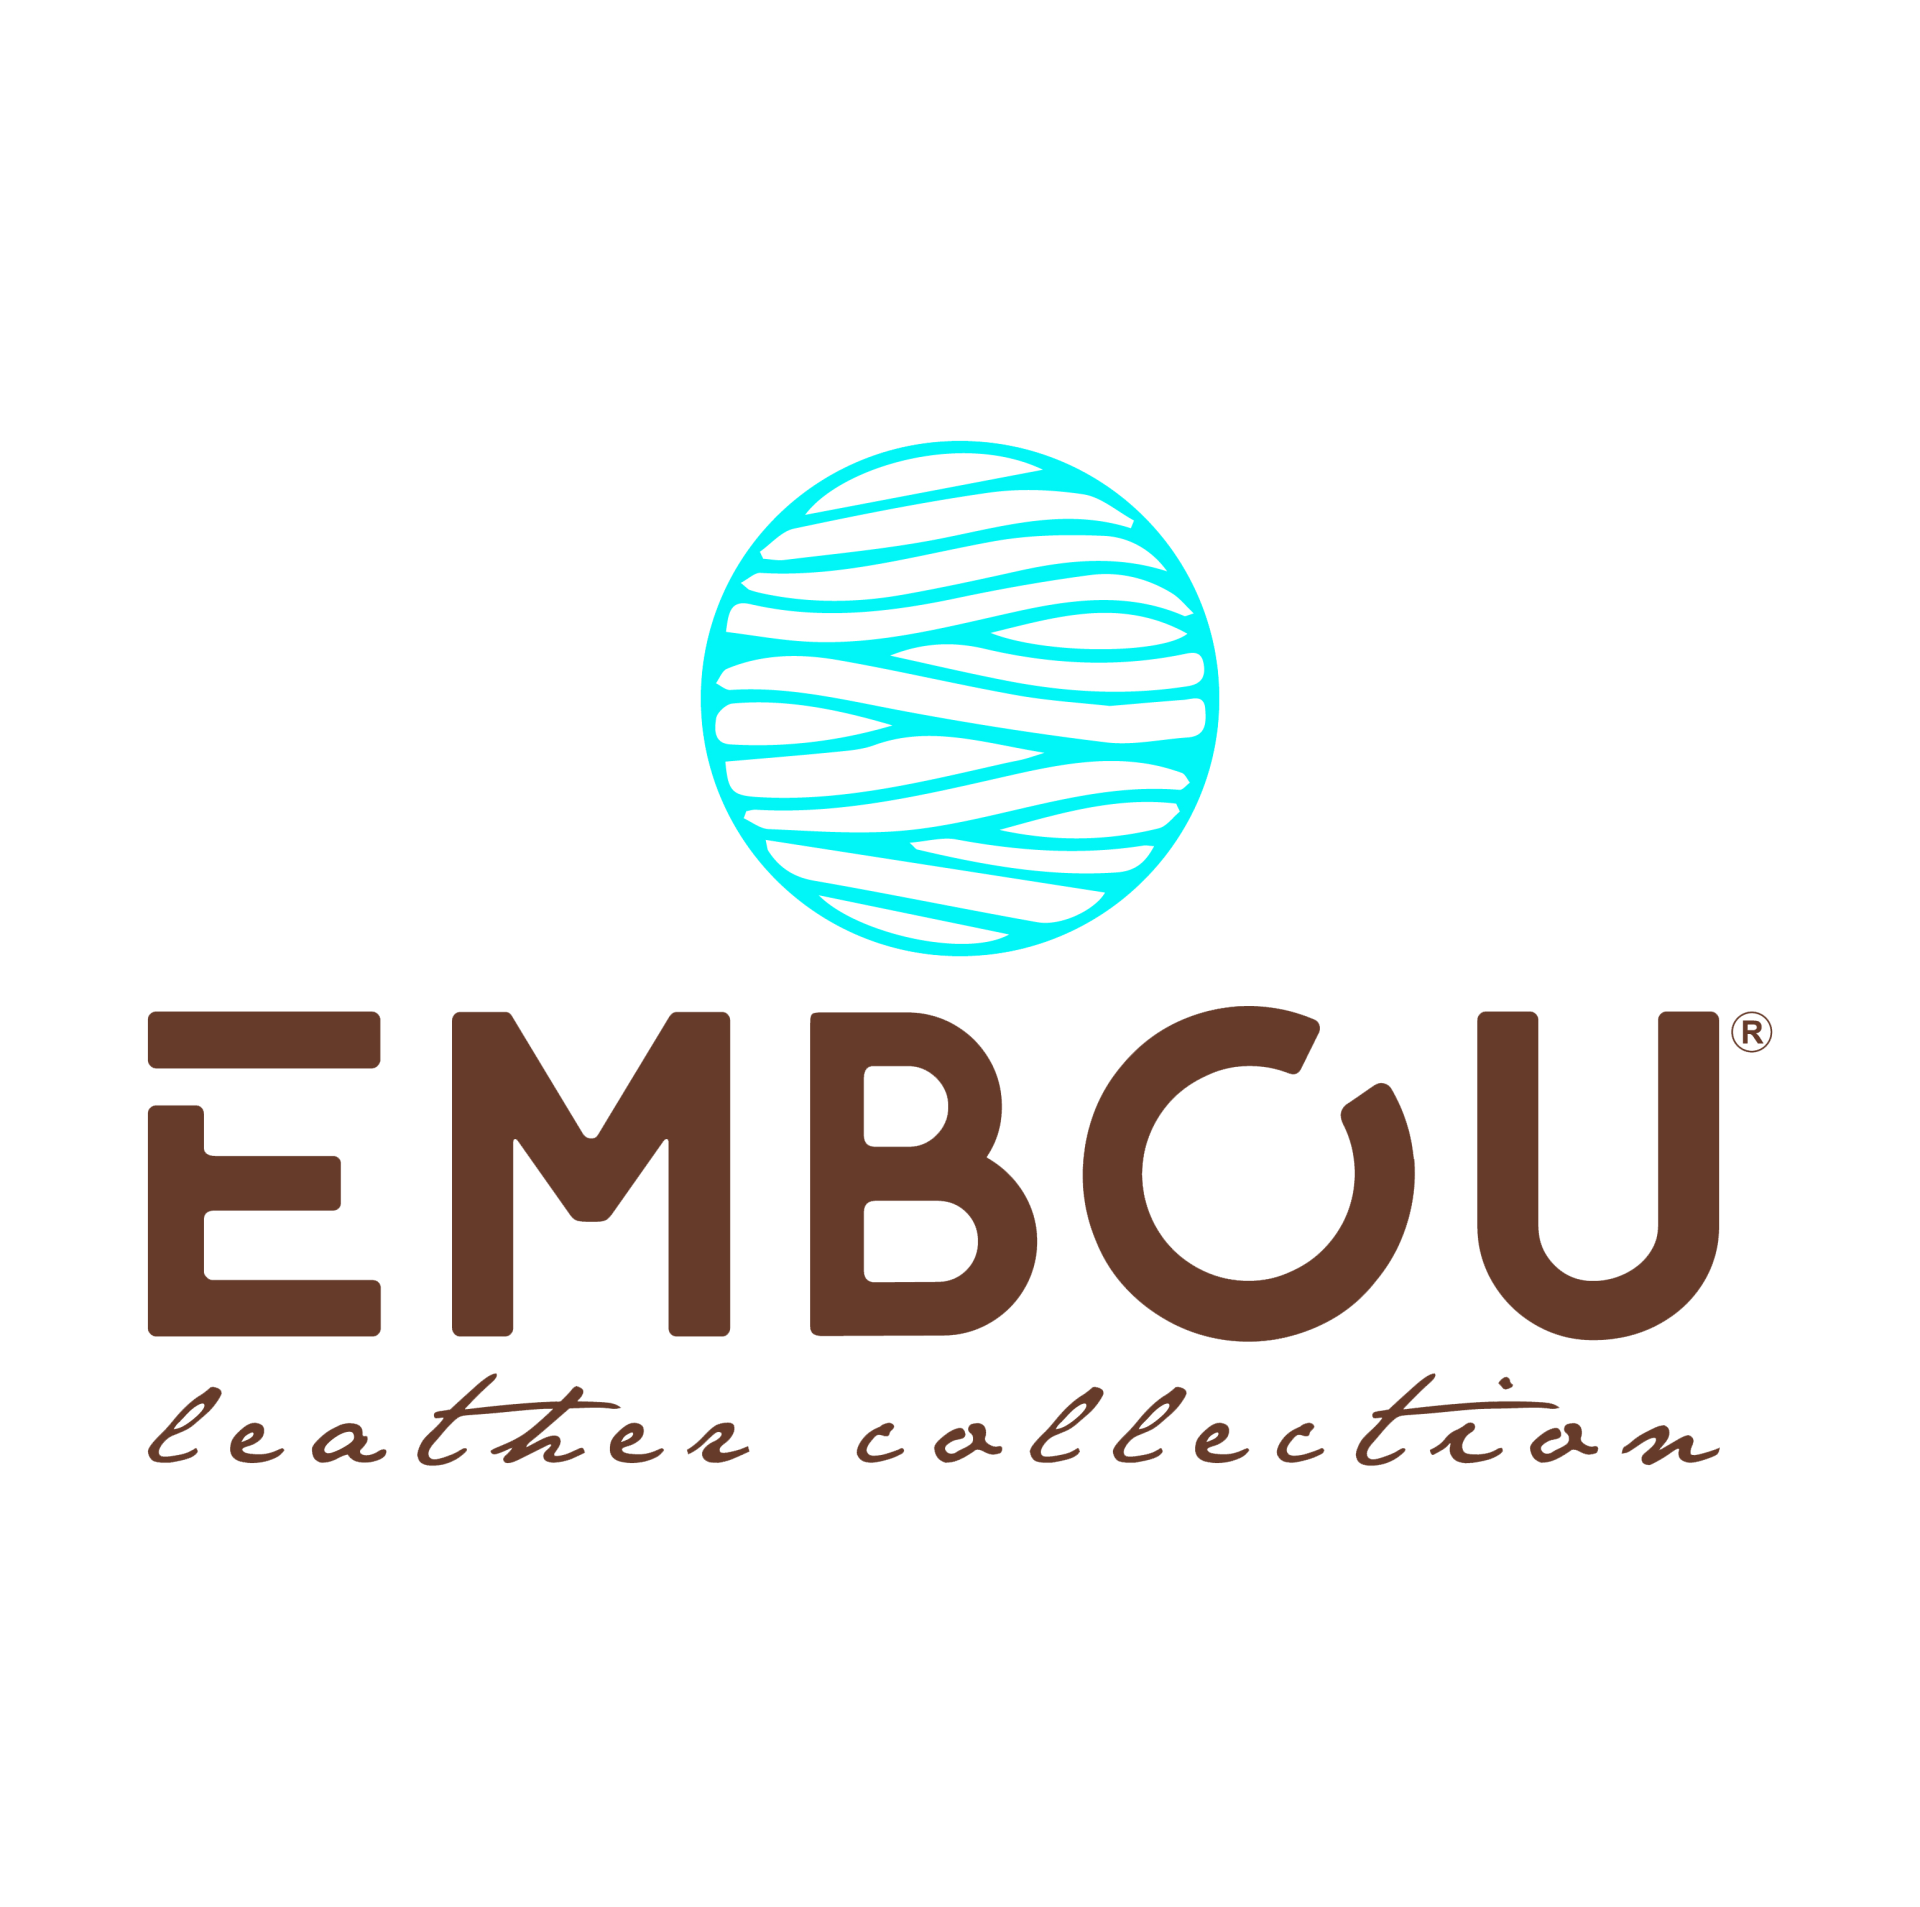 Logo Embou